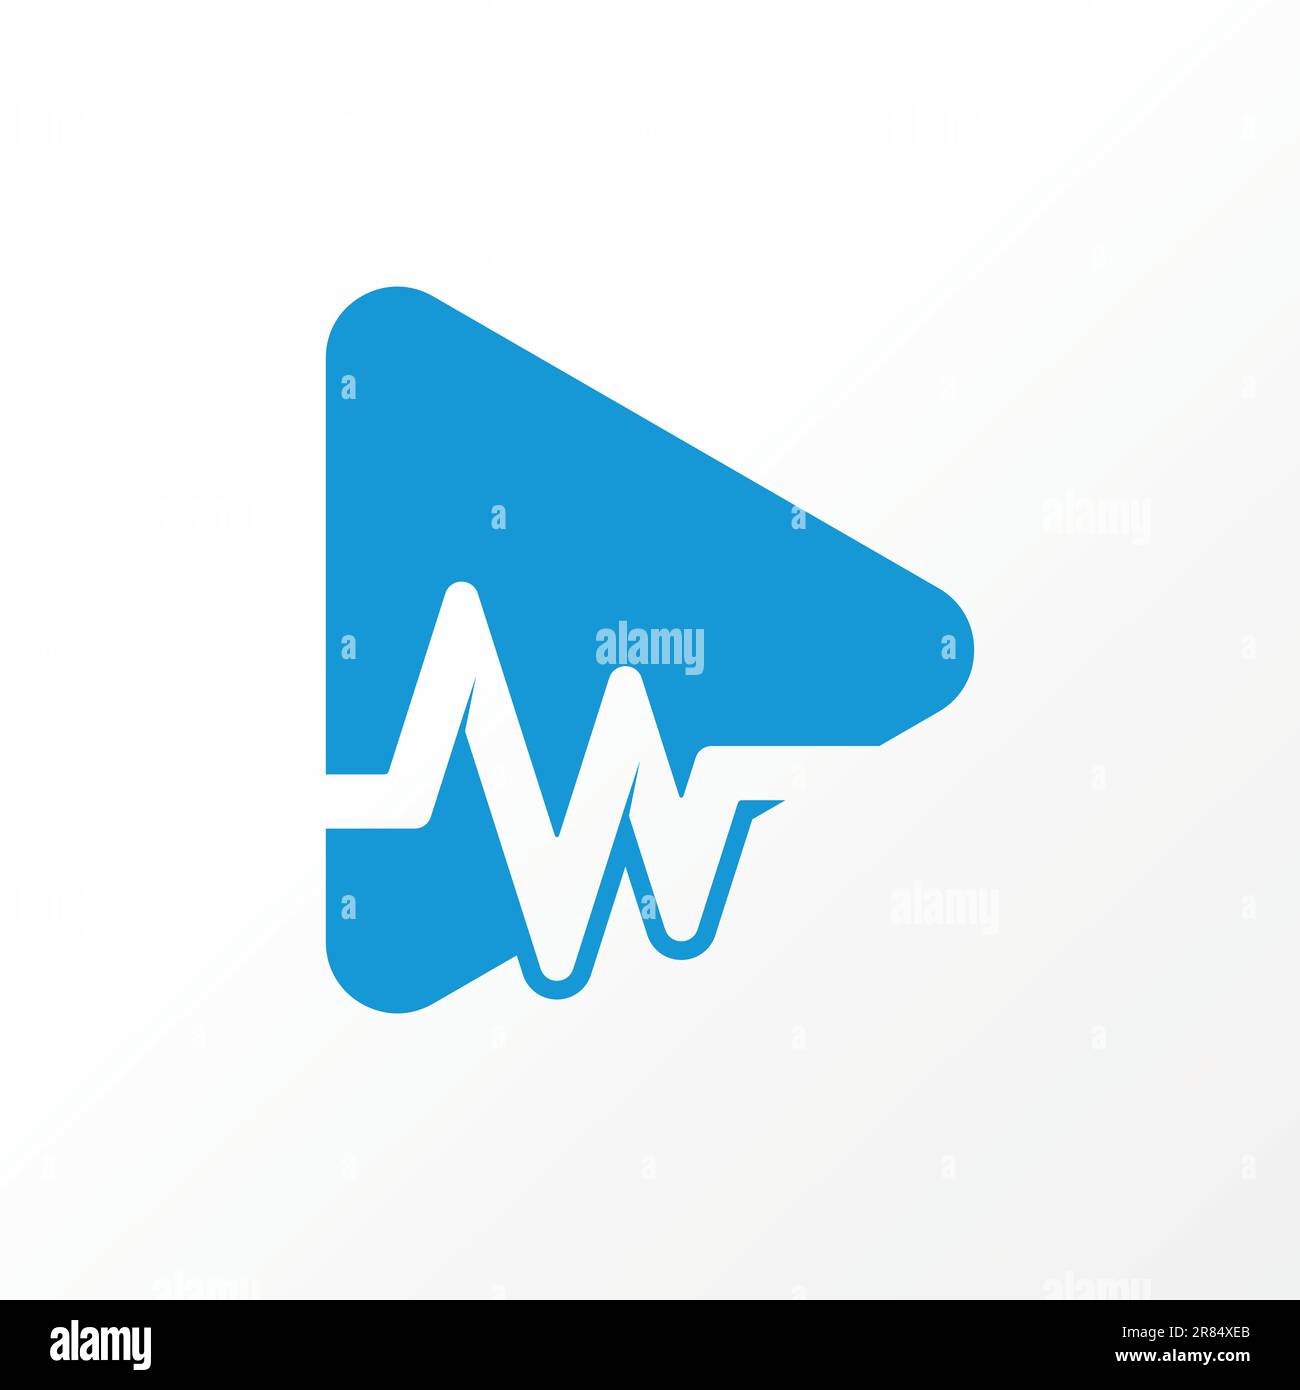 Logo design grafico concetto creativo astratto premium libero vettore stock trading ritmo heartbeat come lettera W carattere iniziale sul video simbolo di gioco Illustrazione Vettoriale